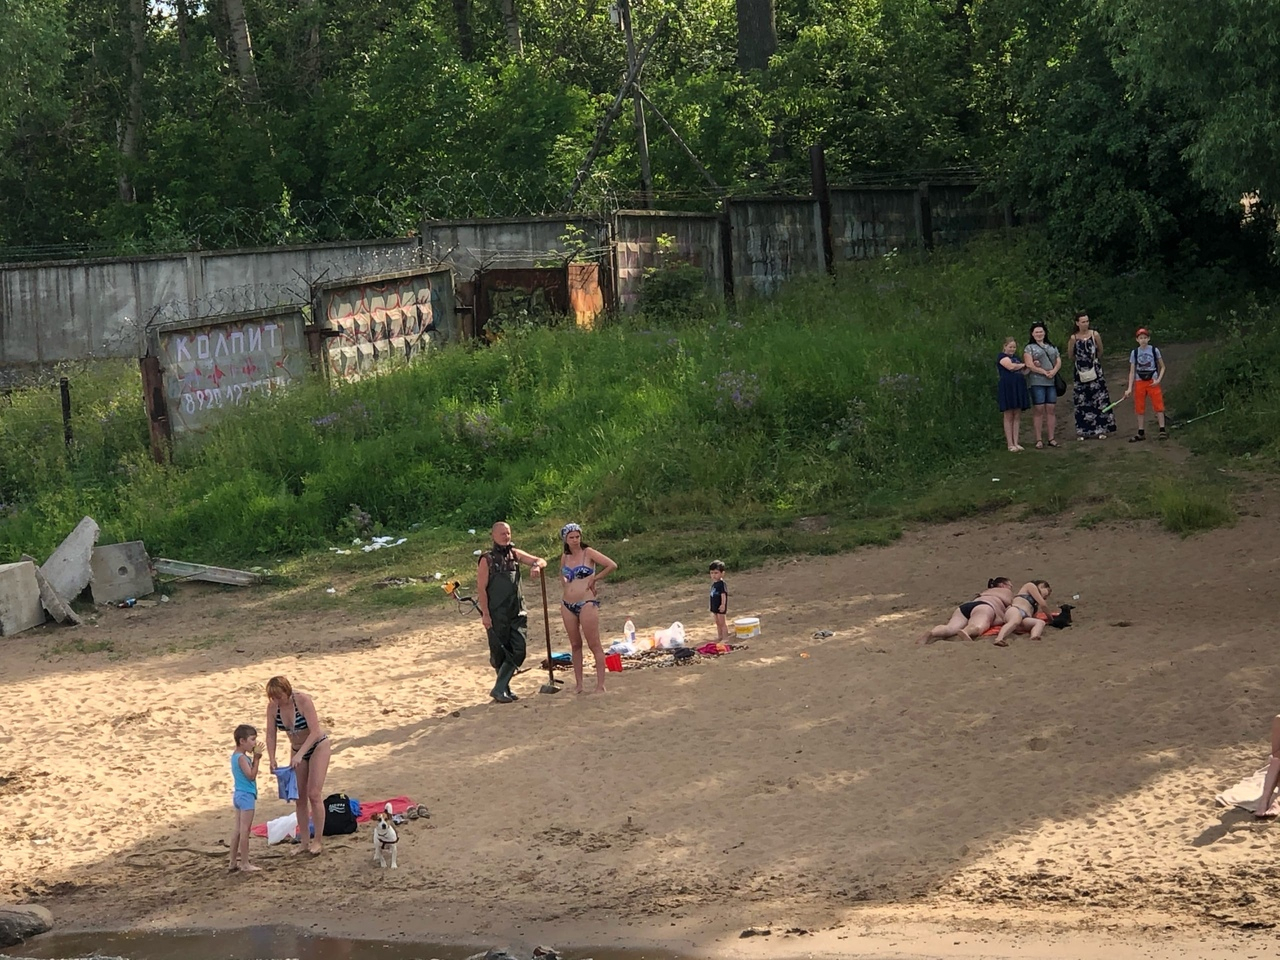 Пышнотелая раздетая девушка свела с ума ярославцев на пляже, видео